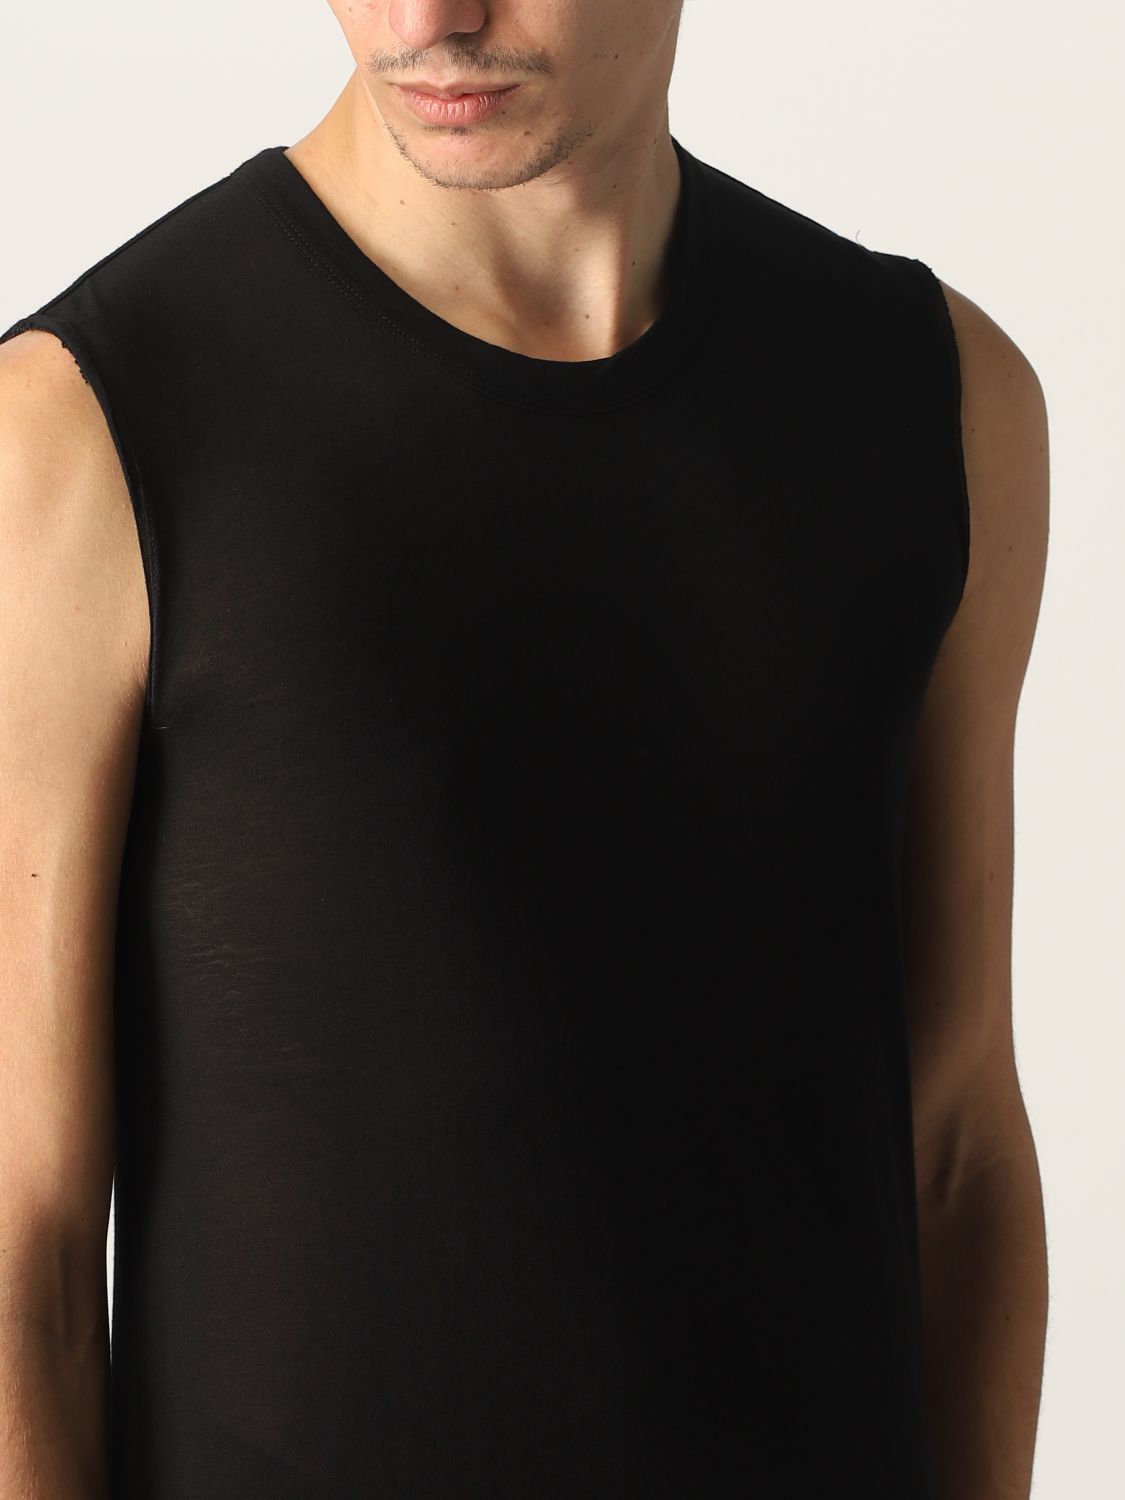 Tシャツ Rick Owens: Tシャツ メンズ Rick Owens ブラック 5